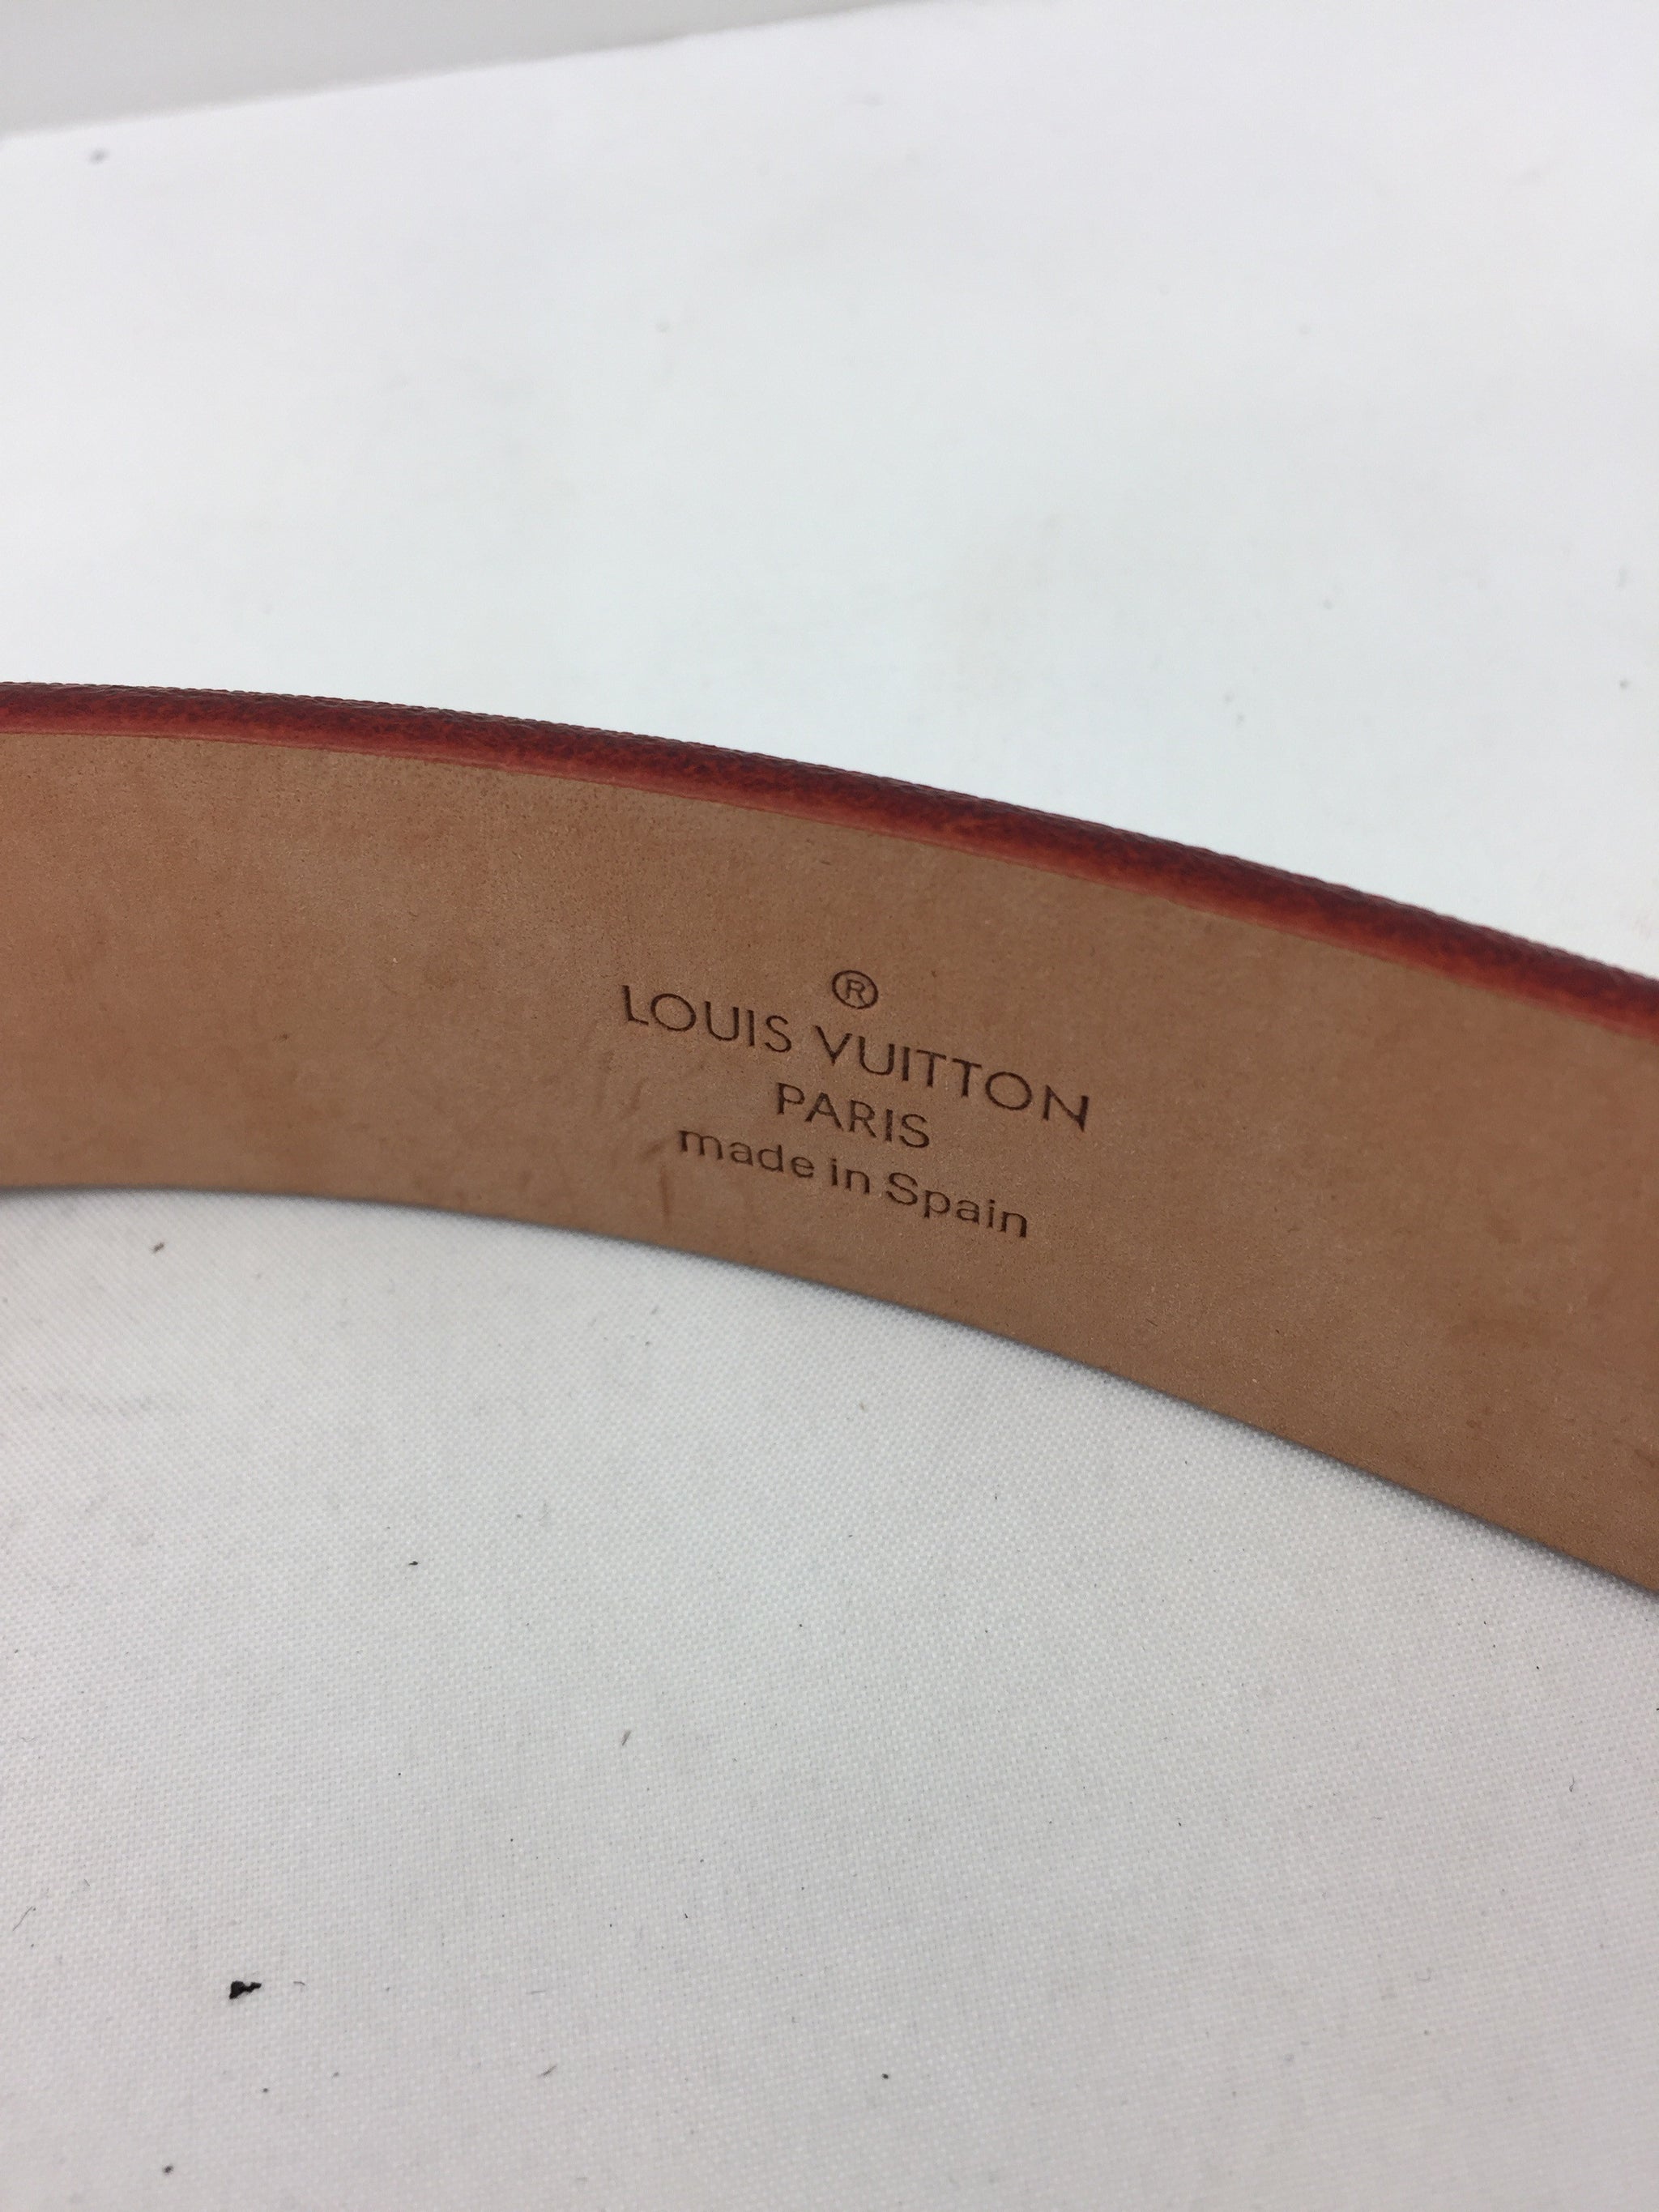 Louis Vuitton Multi-Colored LV Print Belt